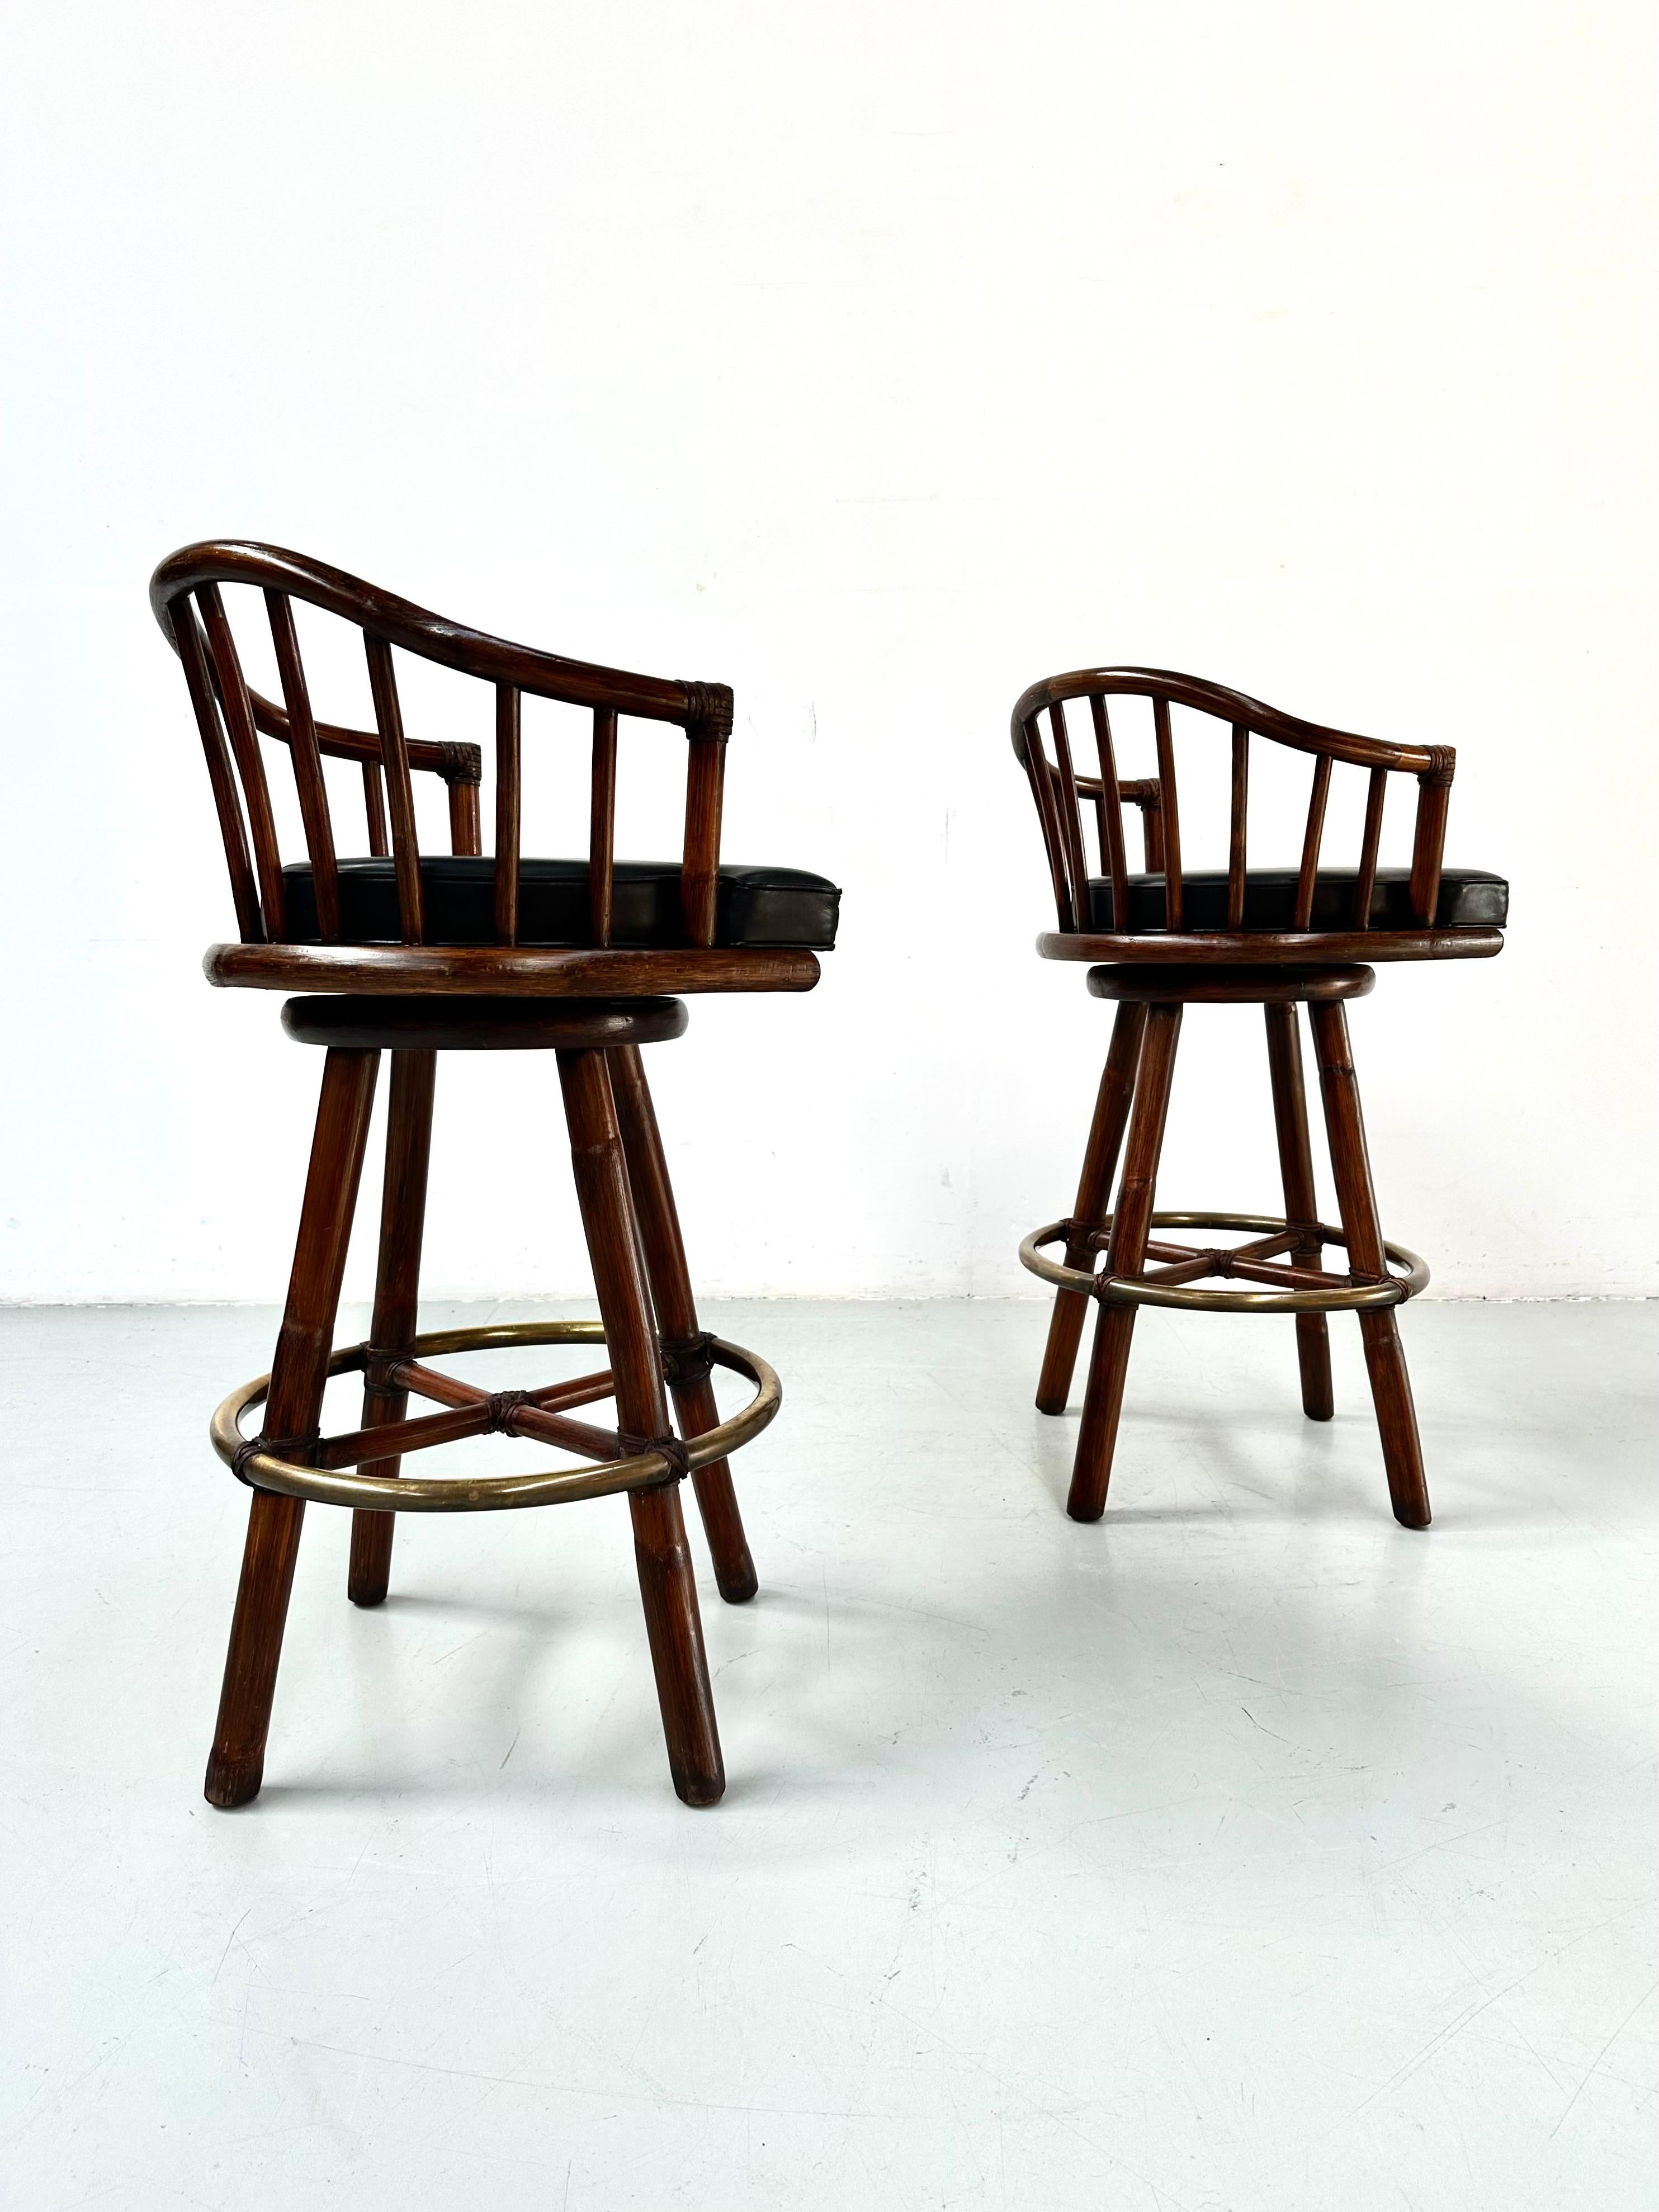 Ein tolles Paar Barhocker aus Bambus und Messing, entworfen von dem Niederländer Hans Kaufeld  für McGuire in den siebziger Jahren. Ausgestattet mit drehbaren, lederbezogenen Sitzen. Diese Barhocker werden mit der berühmten McGuire-Rohlederumreifung